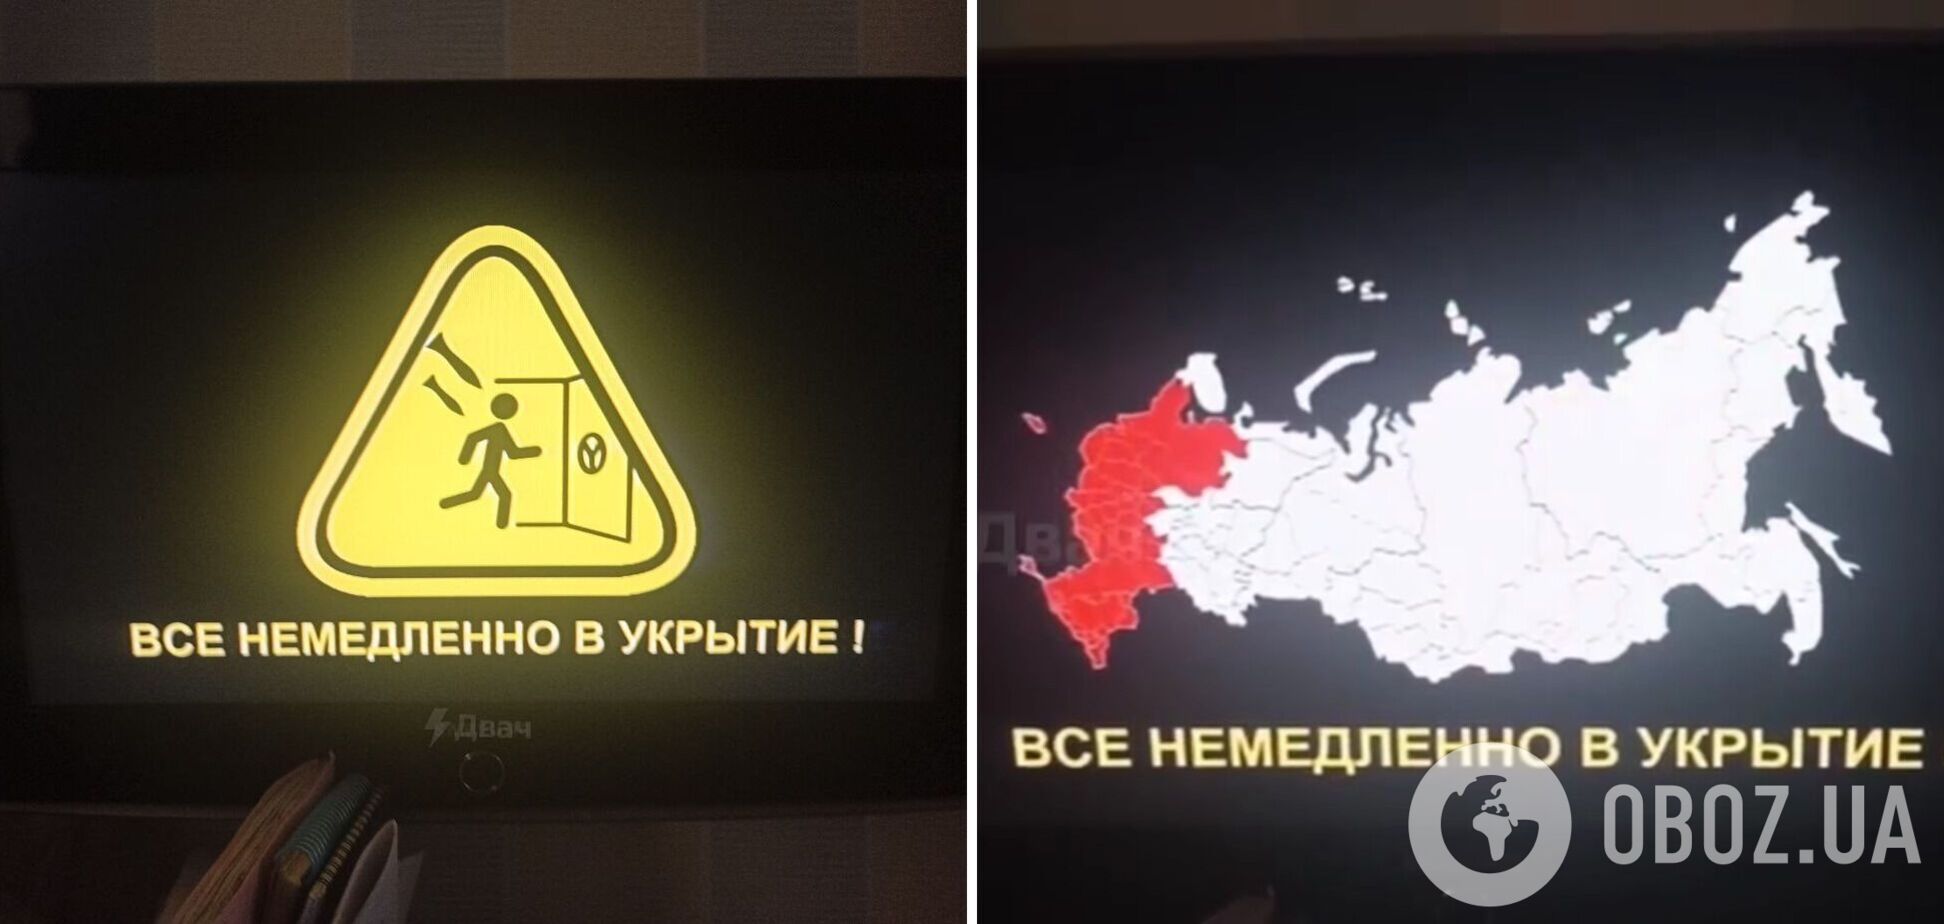 'Все немедленно в укрытия': хакеры вновь взломали российское радио и ТВ и запустили сигнал воздушной тревоги. Видео